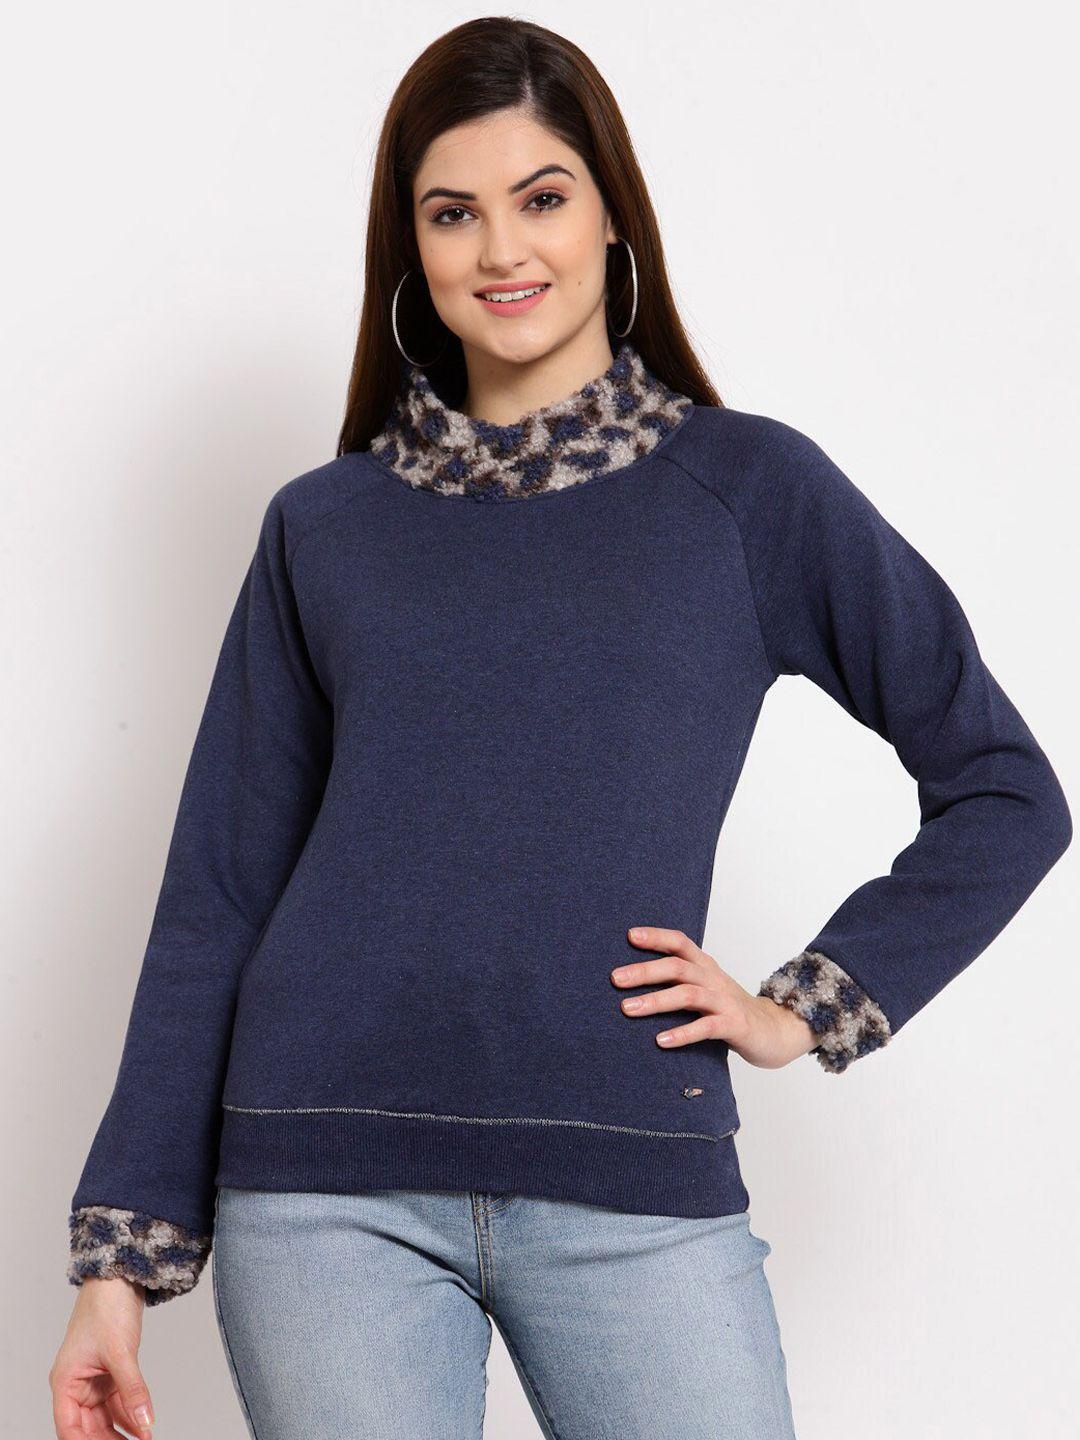 juelle women fleece solid high neck sweatshirt